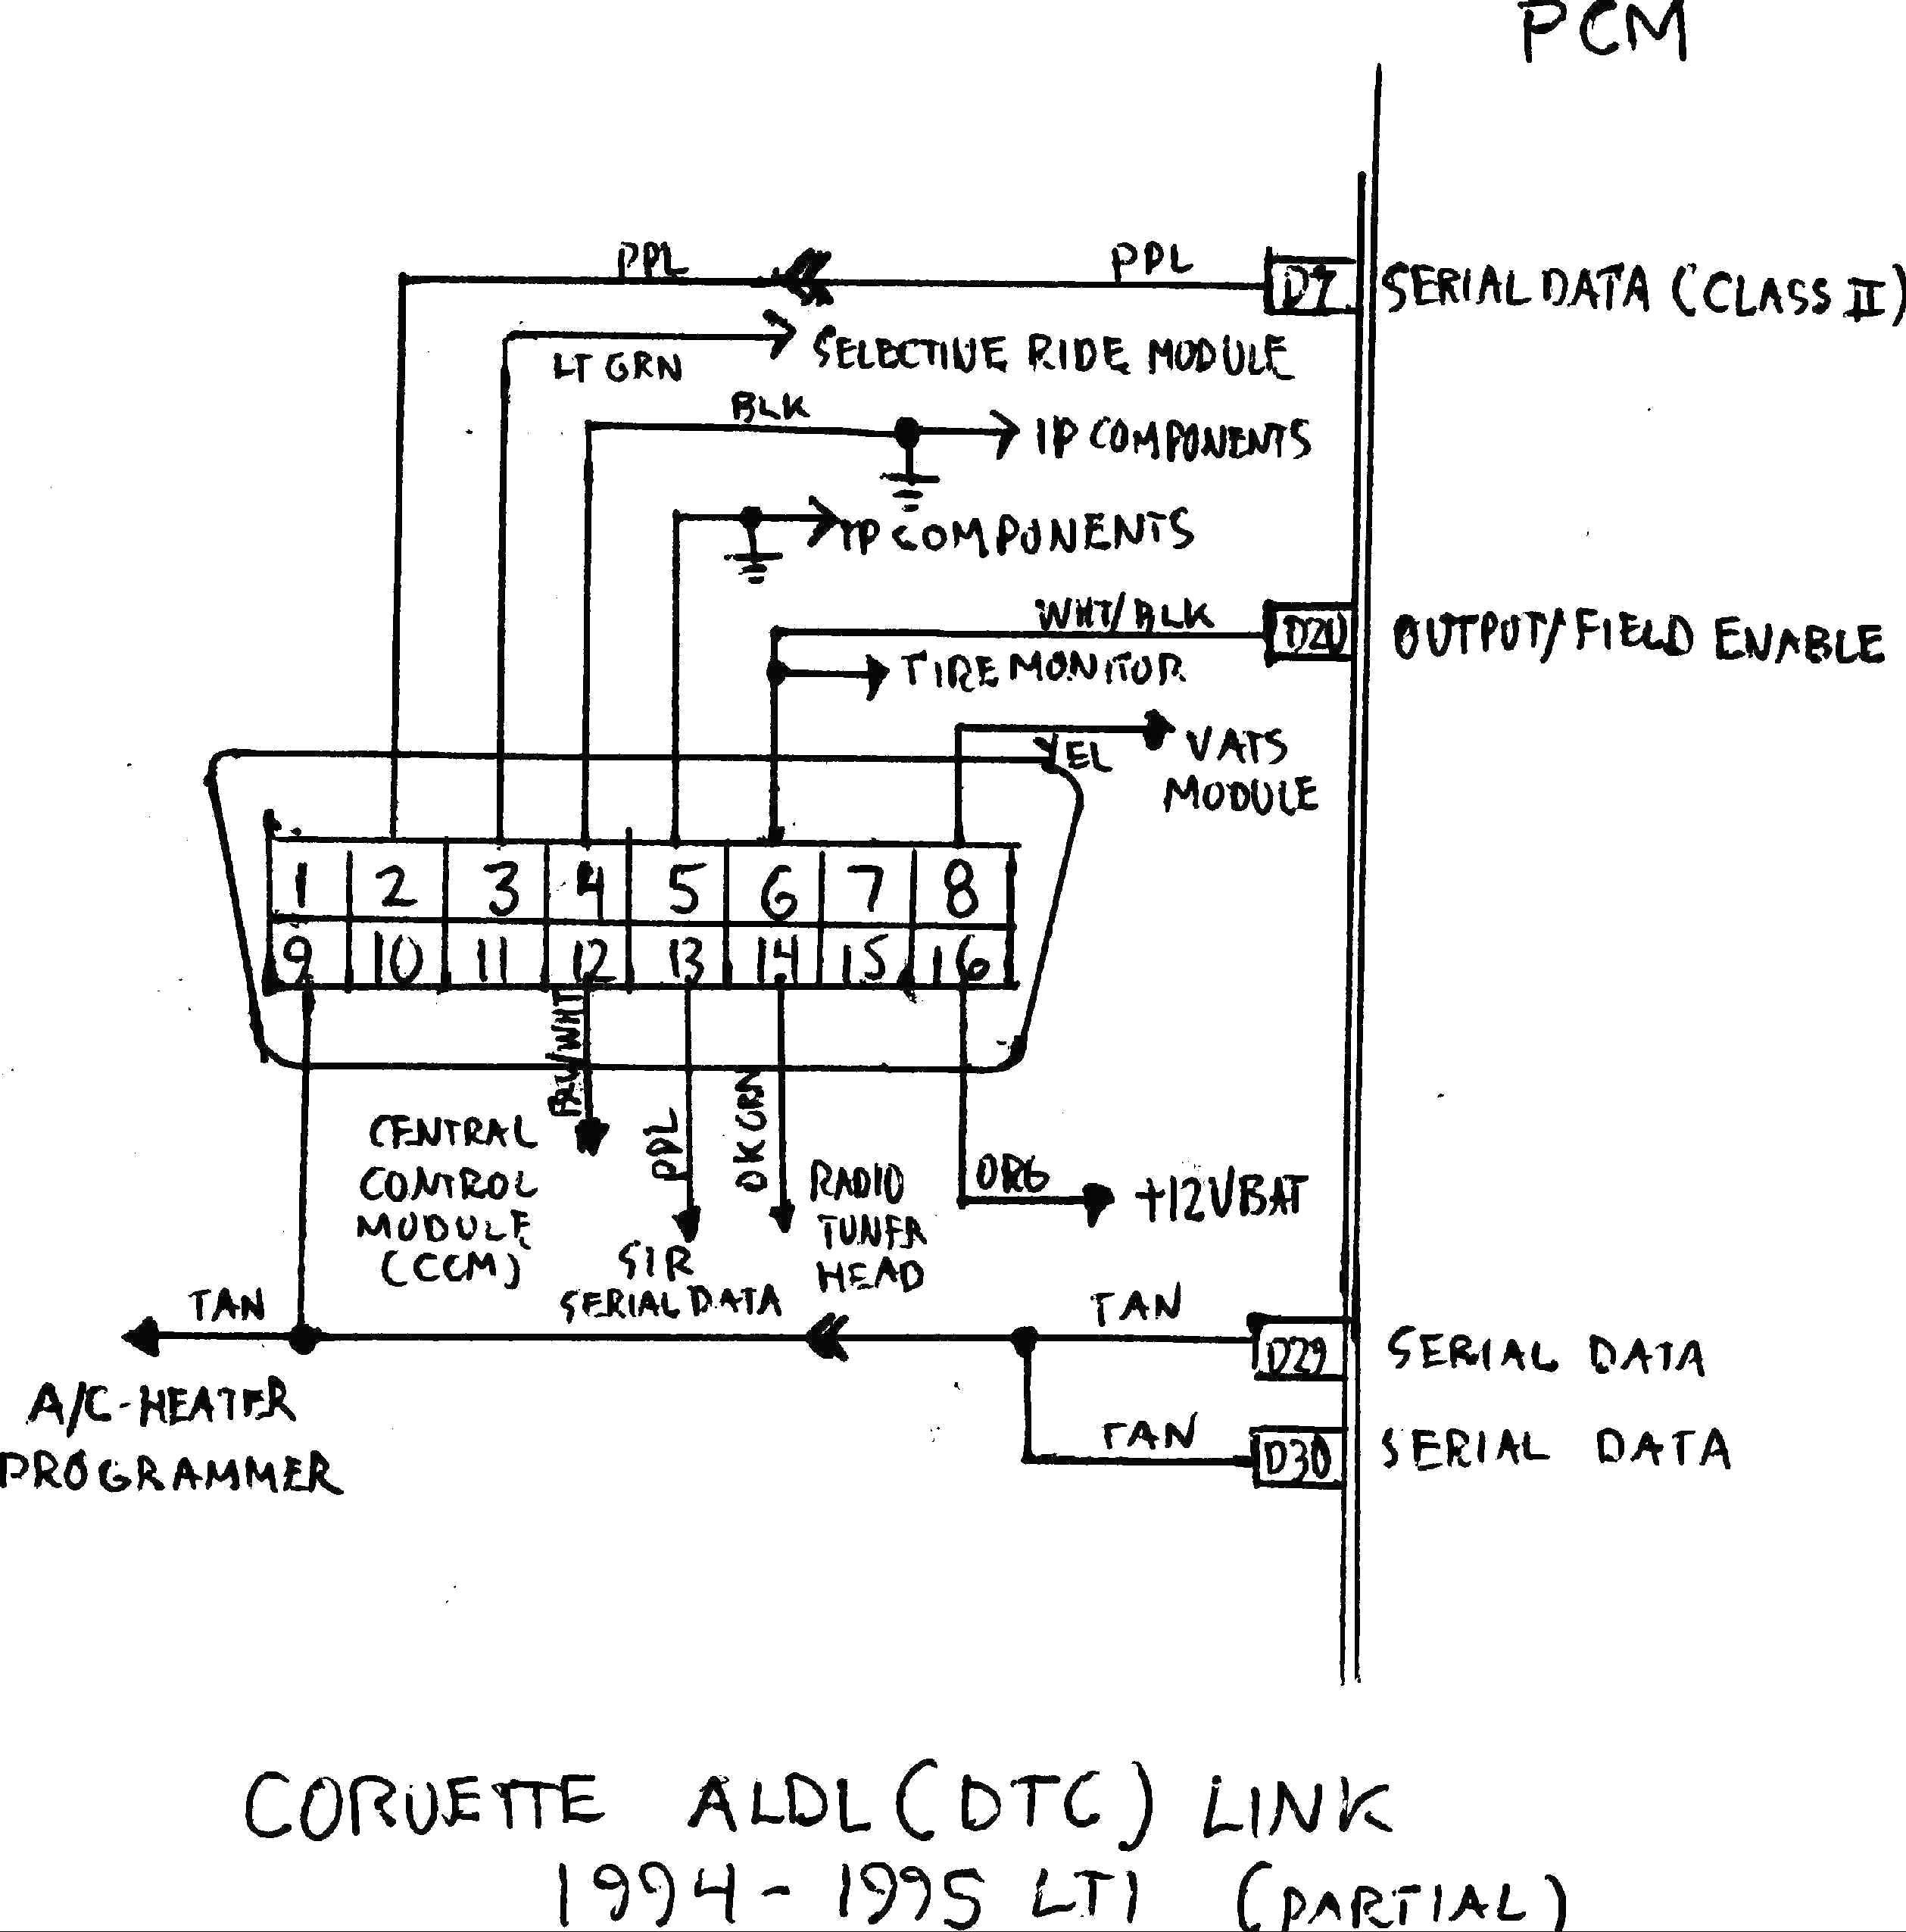 Ford Obd Ii Wiring Diagram | Wiring Diagram Library - Obd2 Wiring Diagram